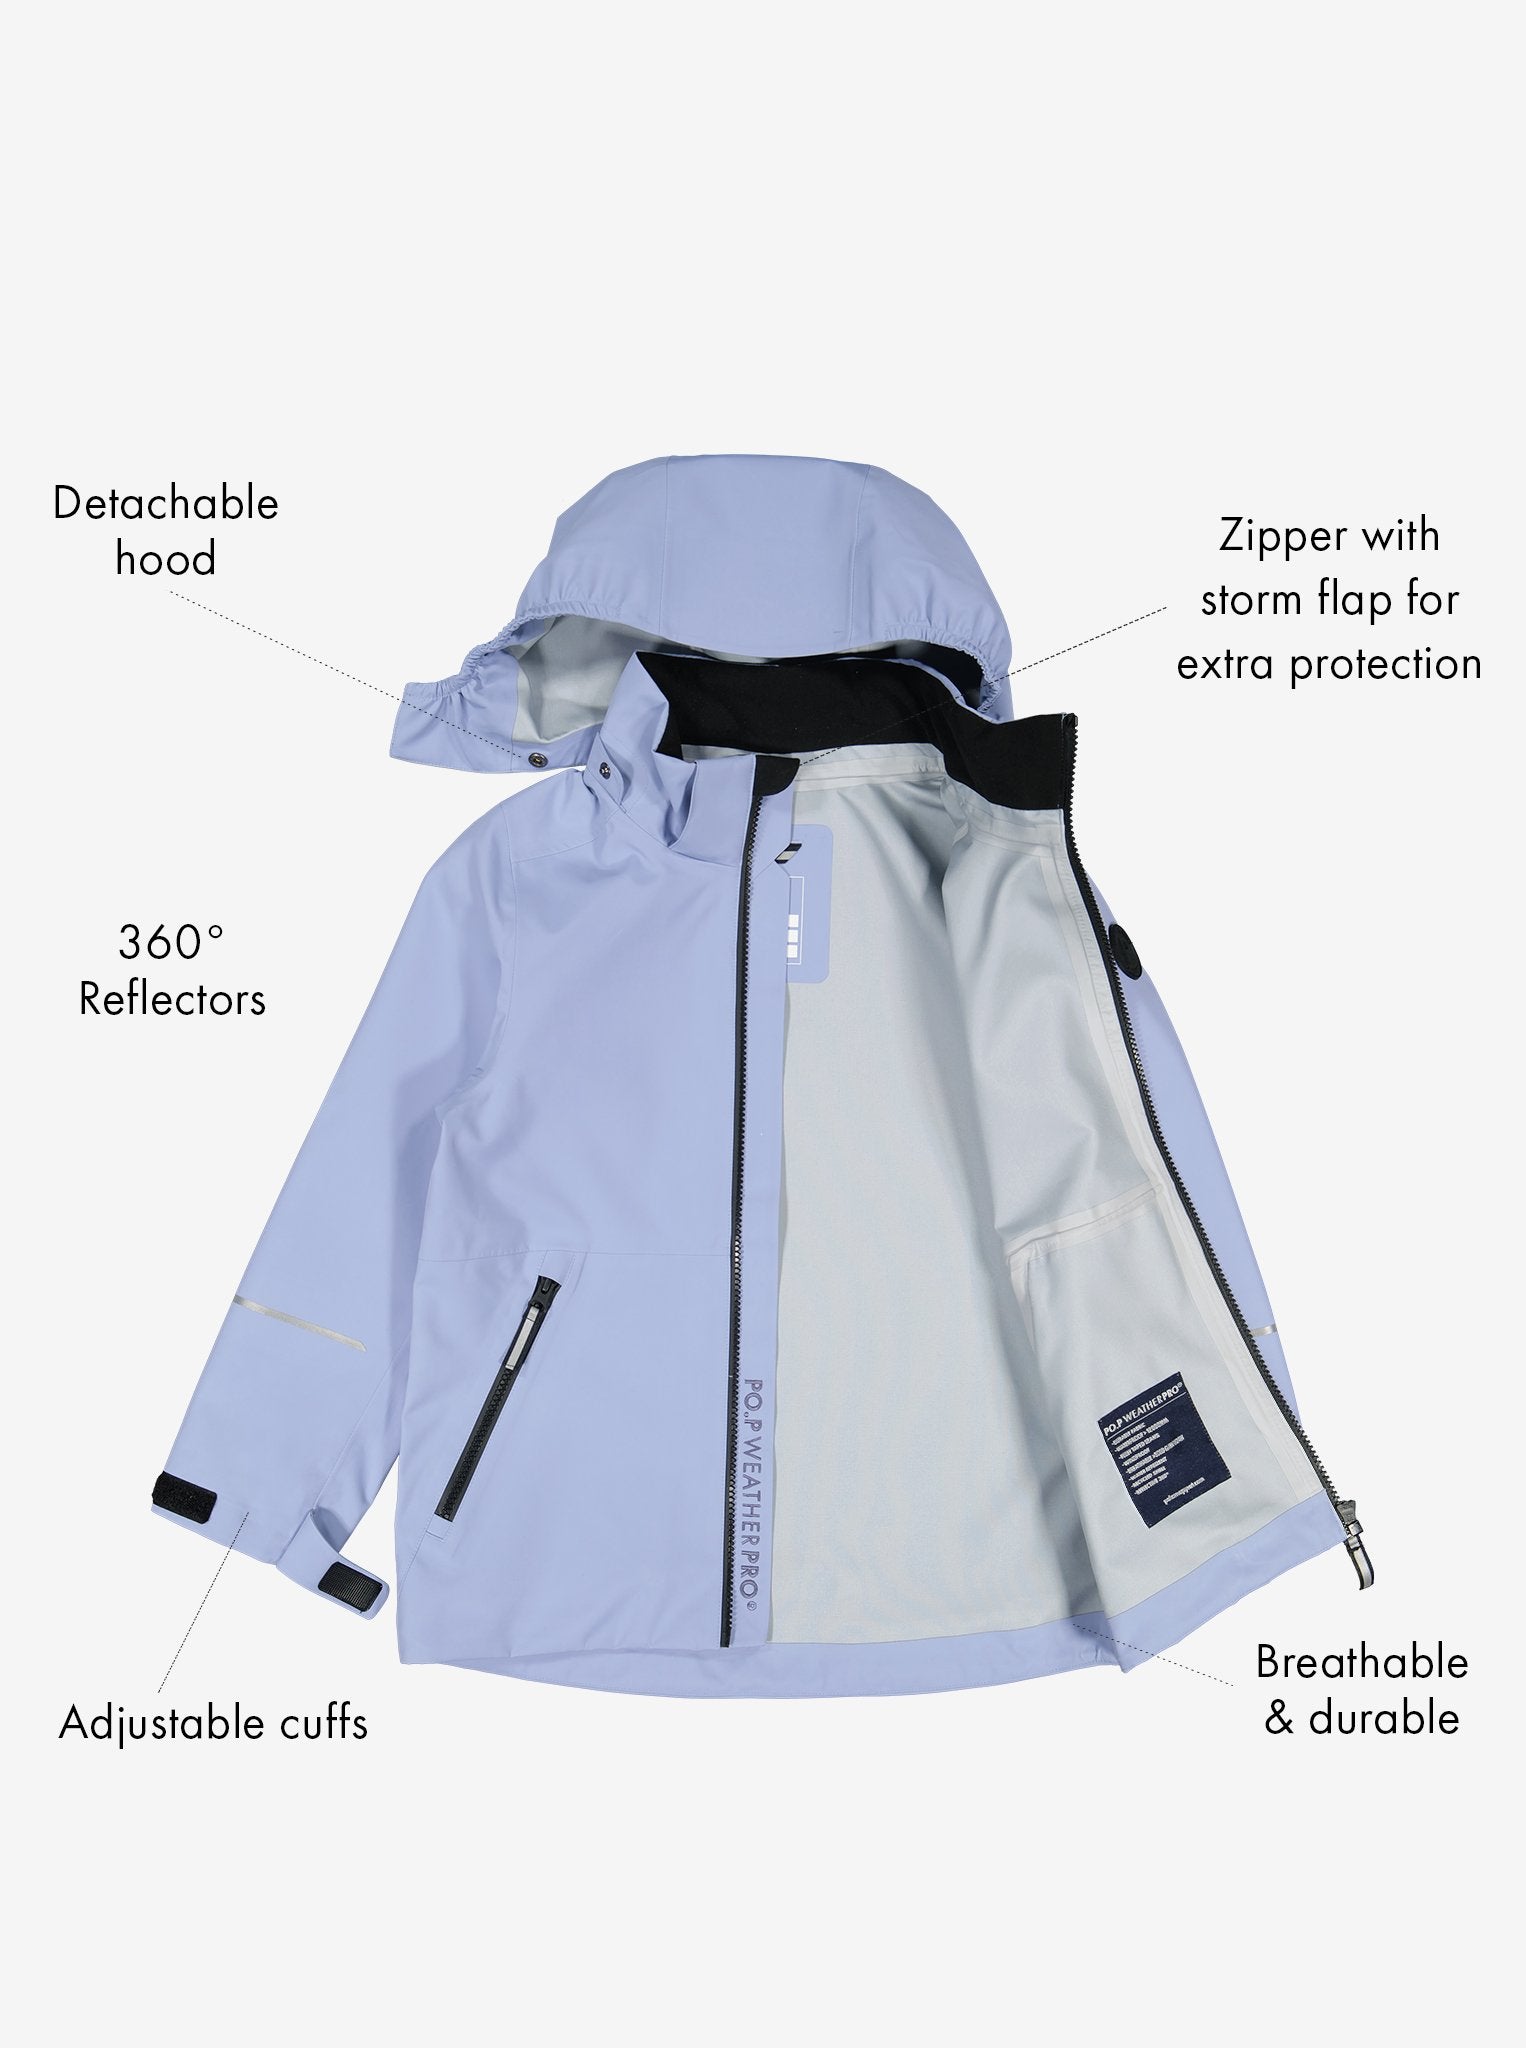 Blue Waterproof Kids Jacket from Polarn O. Pyret Kidswear. Waterproof Kids Jacket